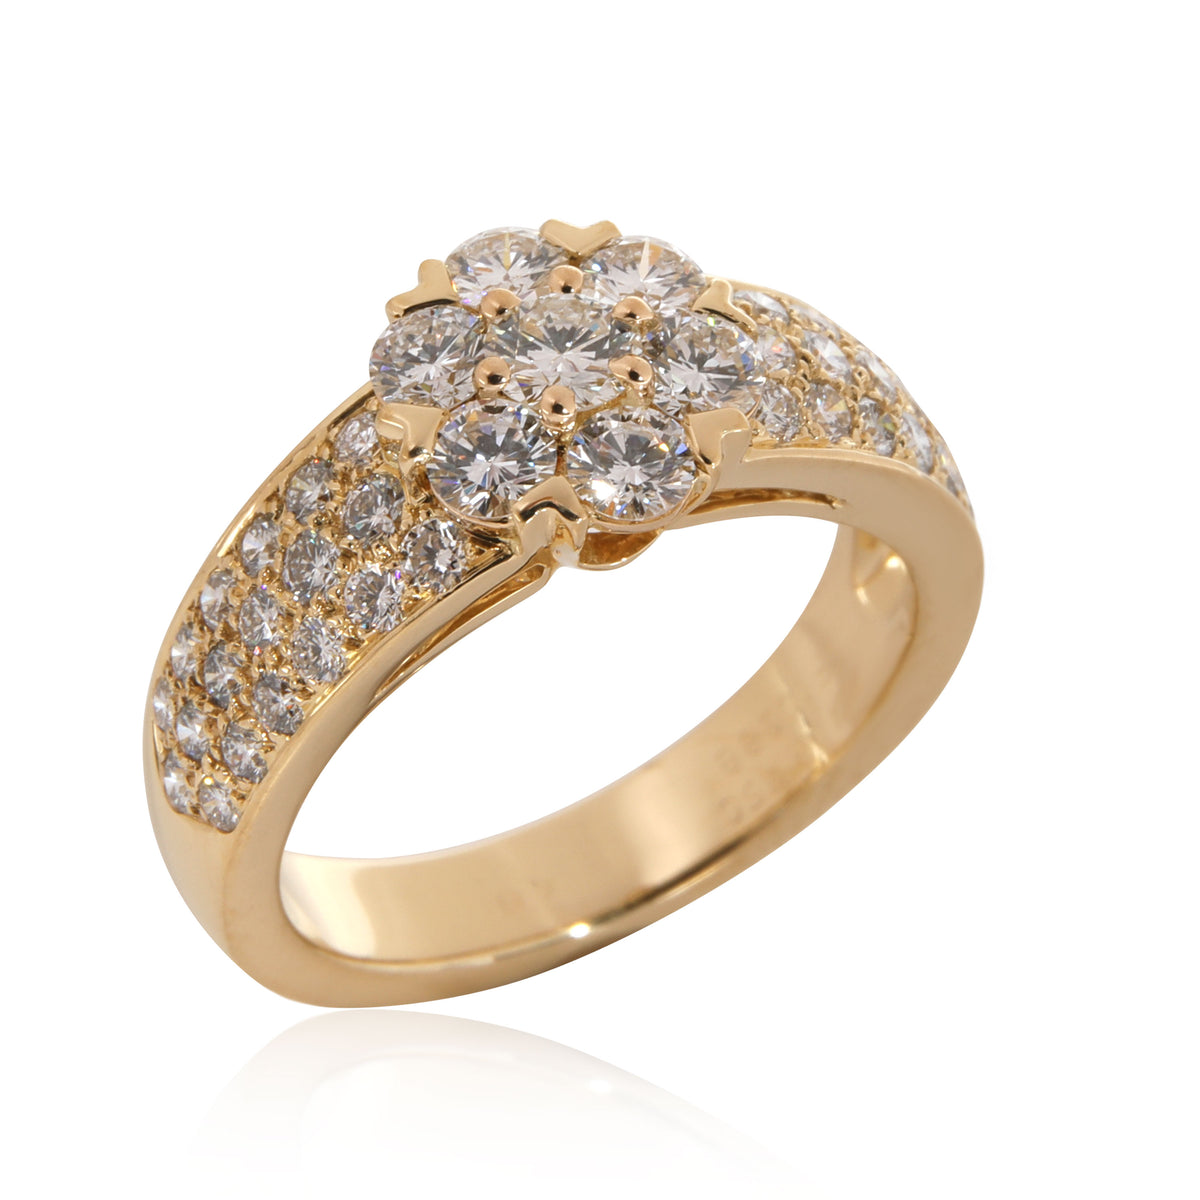 Van Cleef & Arpels Fleurette Diamond Ring in 18K Yellow Gold 1.15 CTW